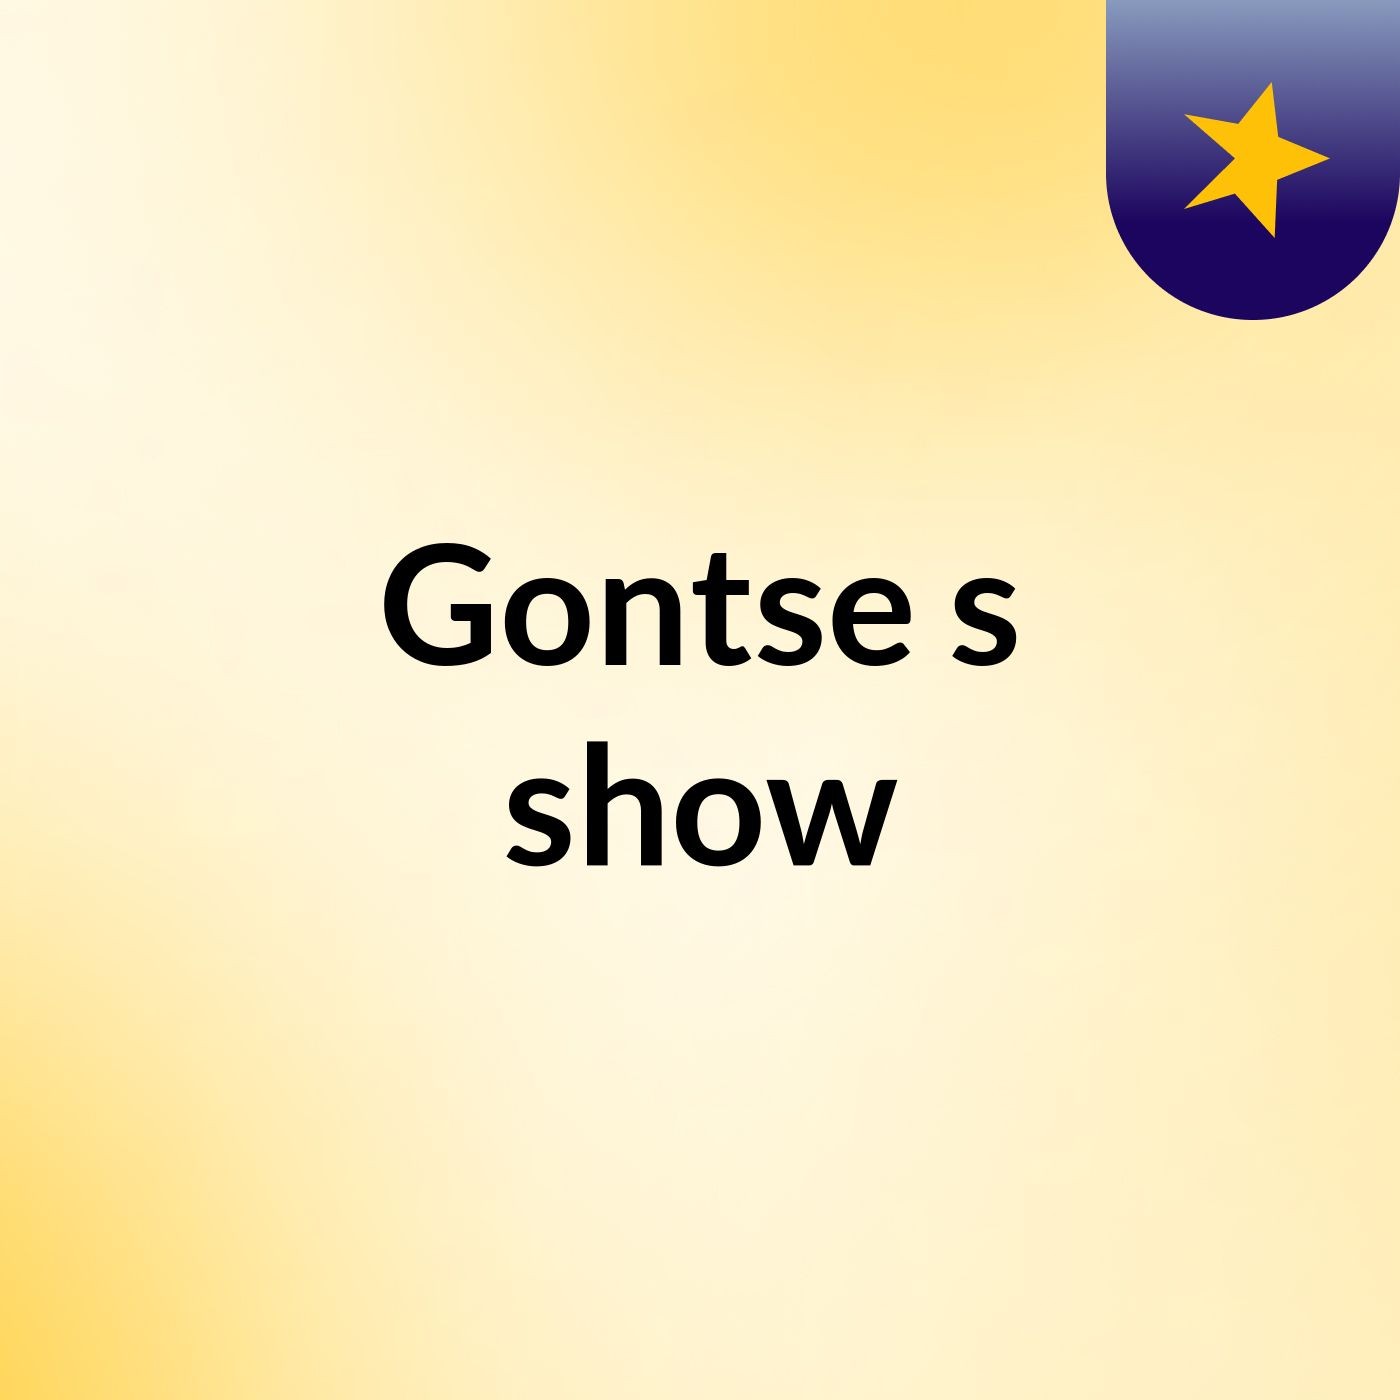 Gontse's show